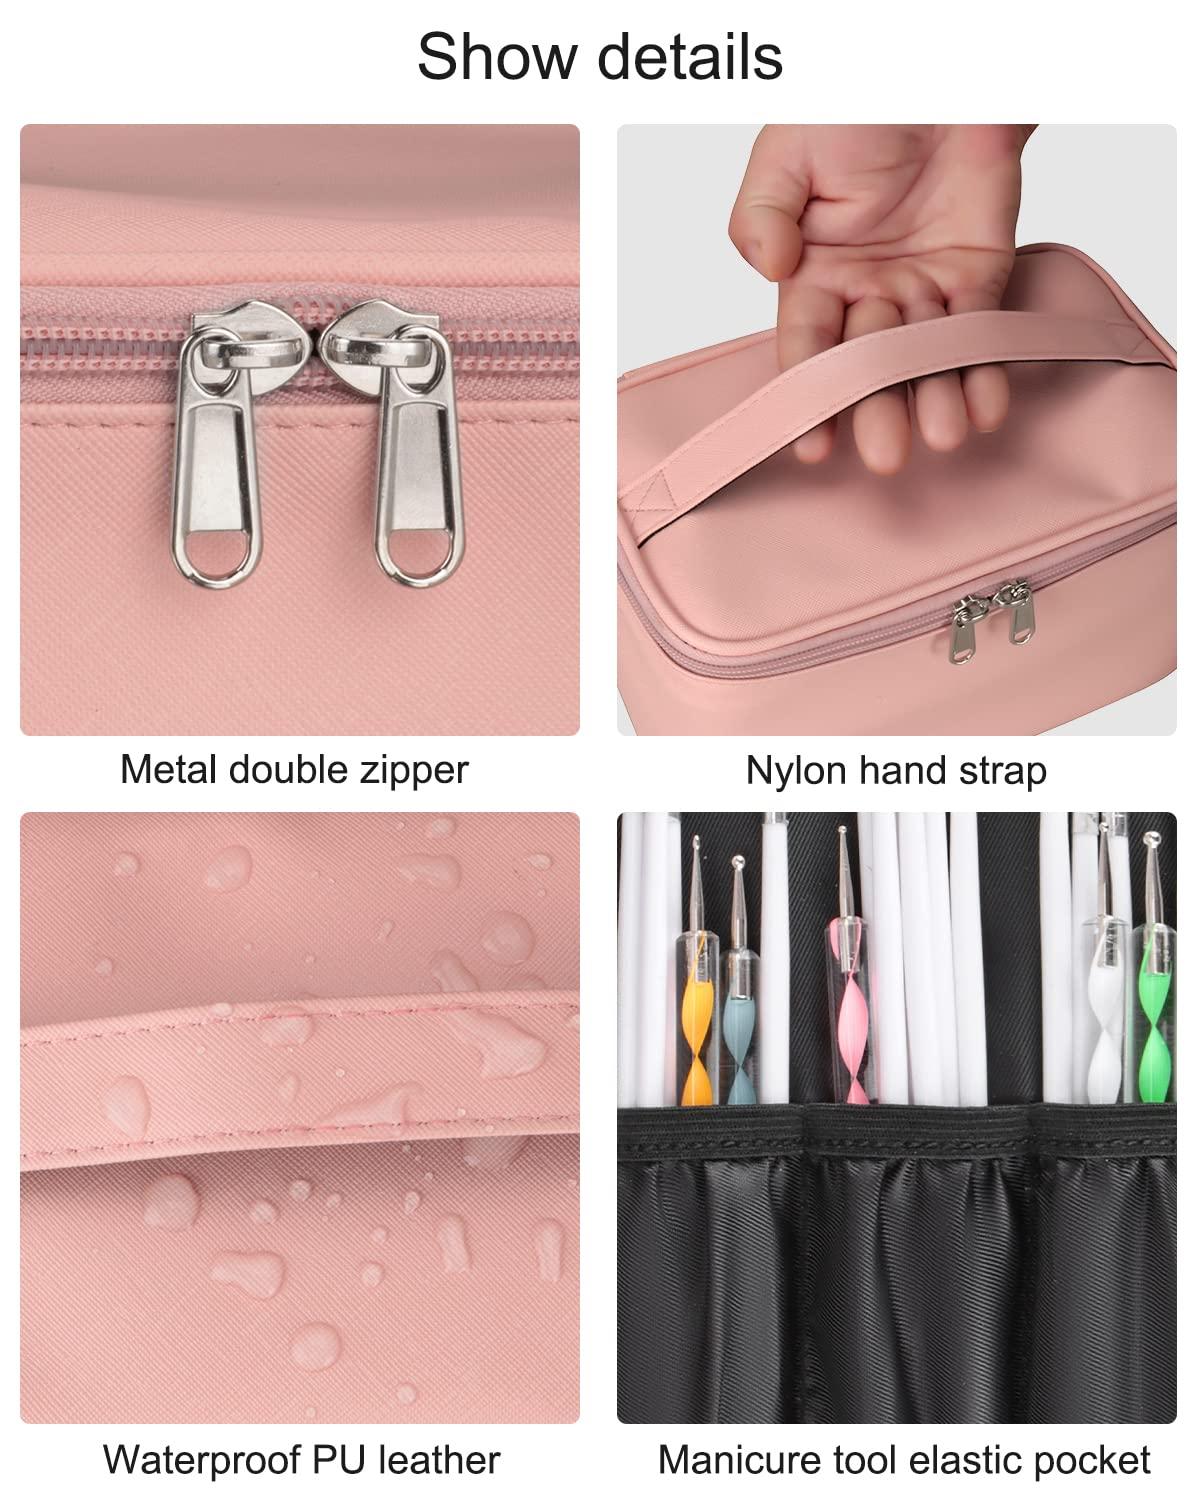 Polish Storage Bag Nail Polish Holder Case With Compartments Nail